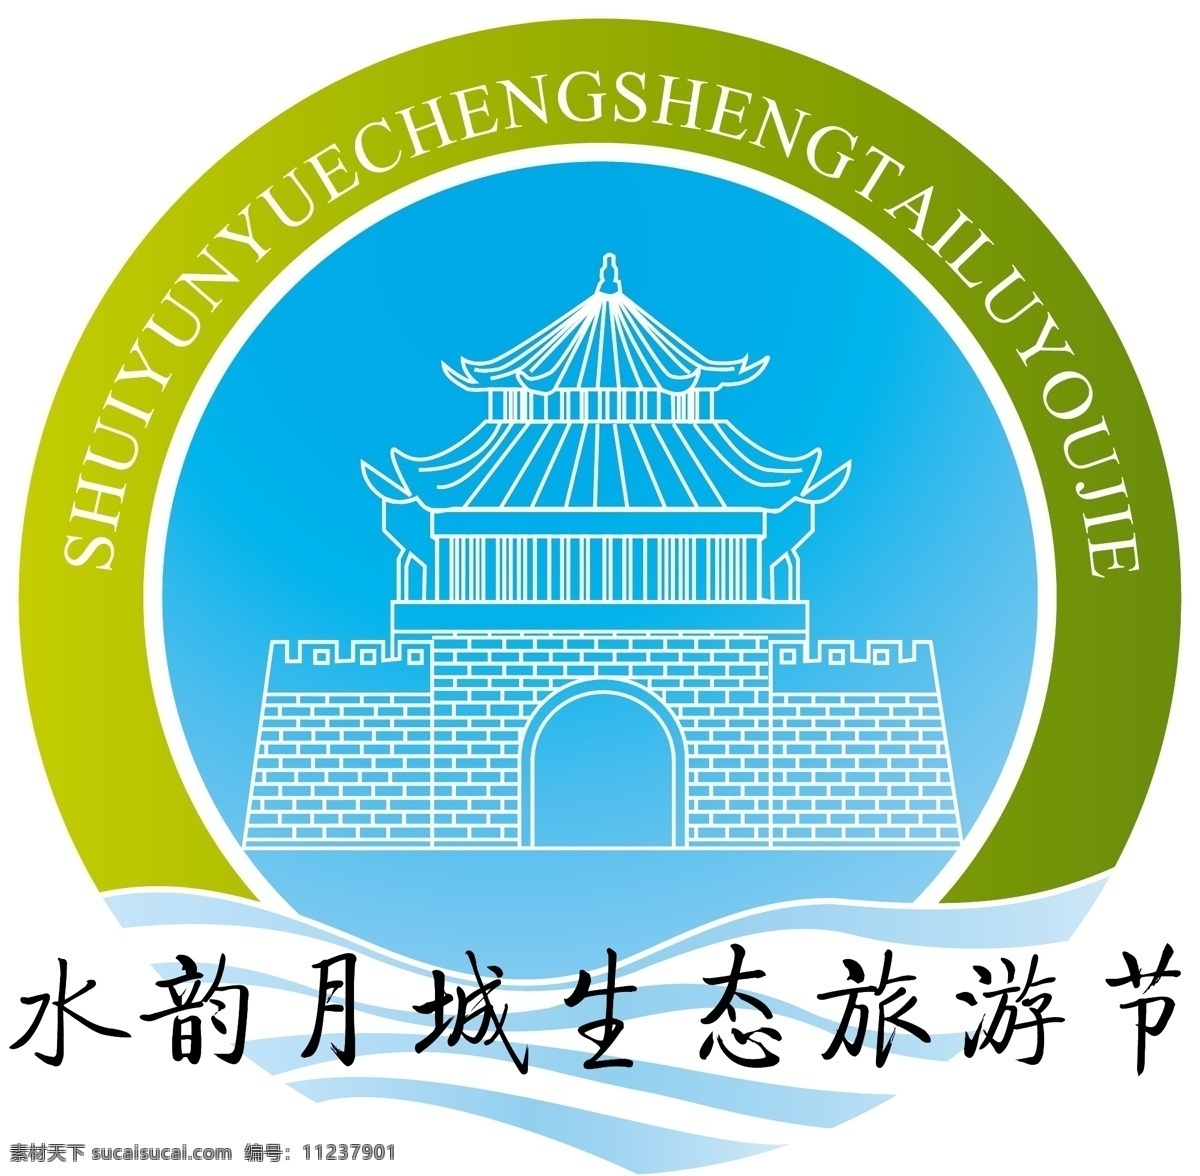 旅游节 logo 源文件 水韵 月城 生态 城墙 江南水乡